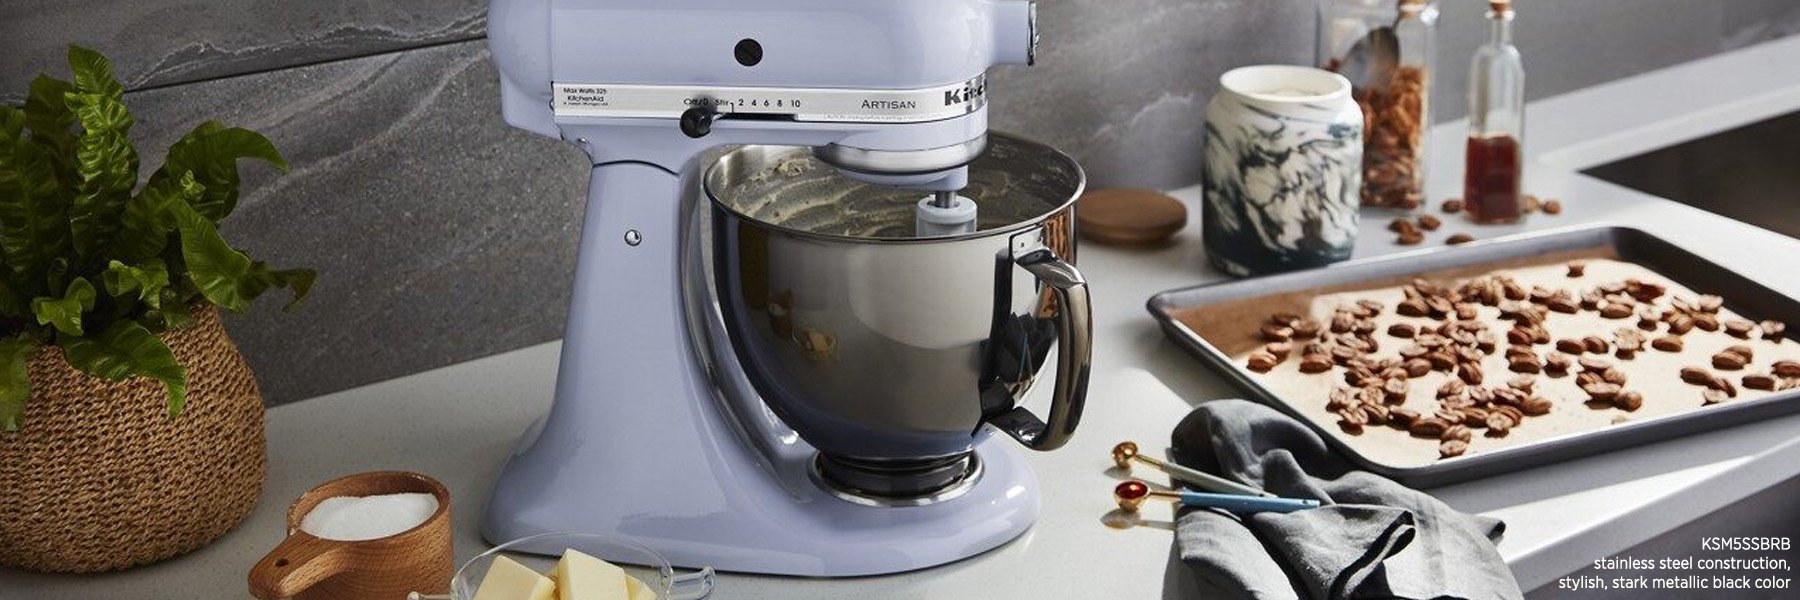 薰衣草KitchenAid台式搅拌机和黑色不锈钢碗的照片。